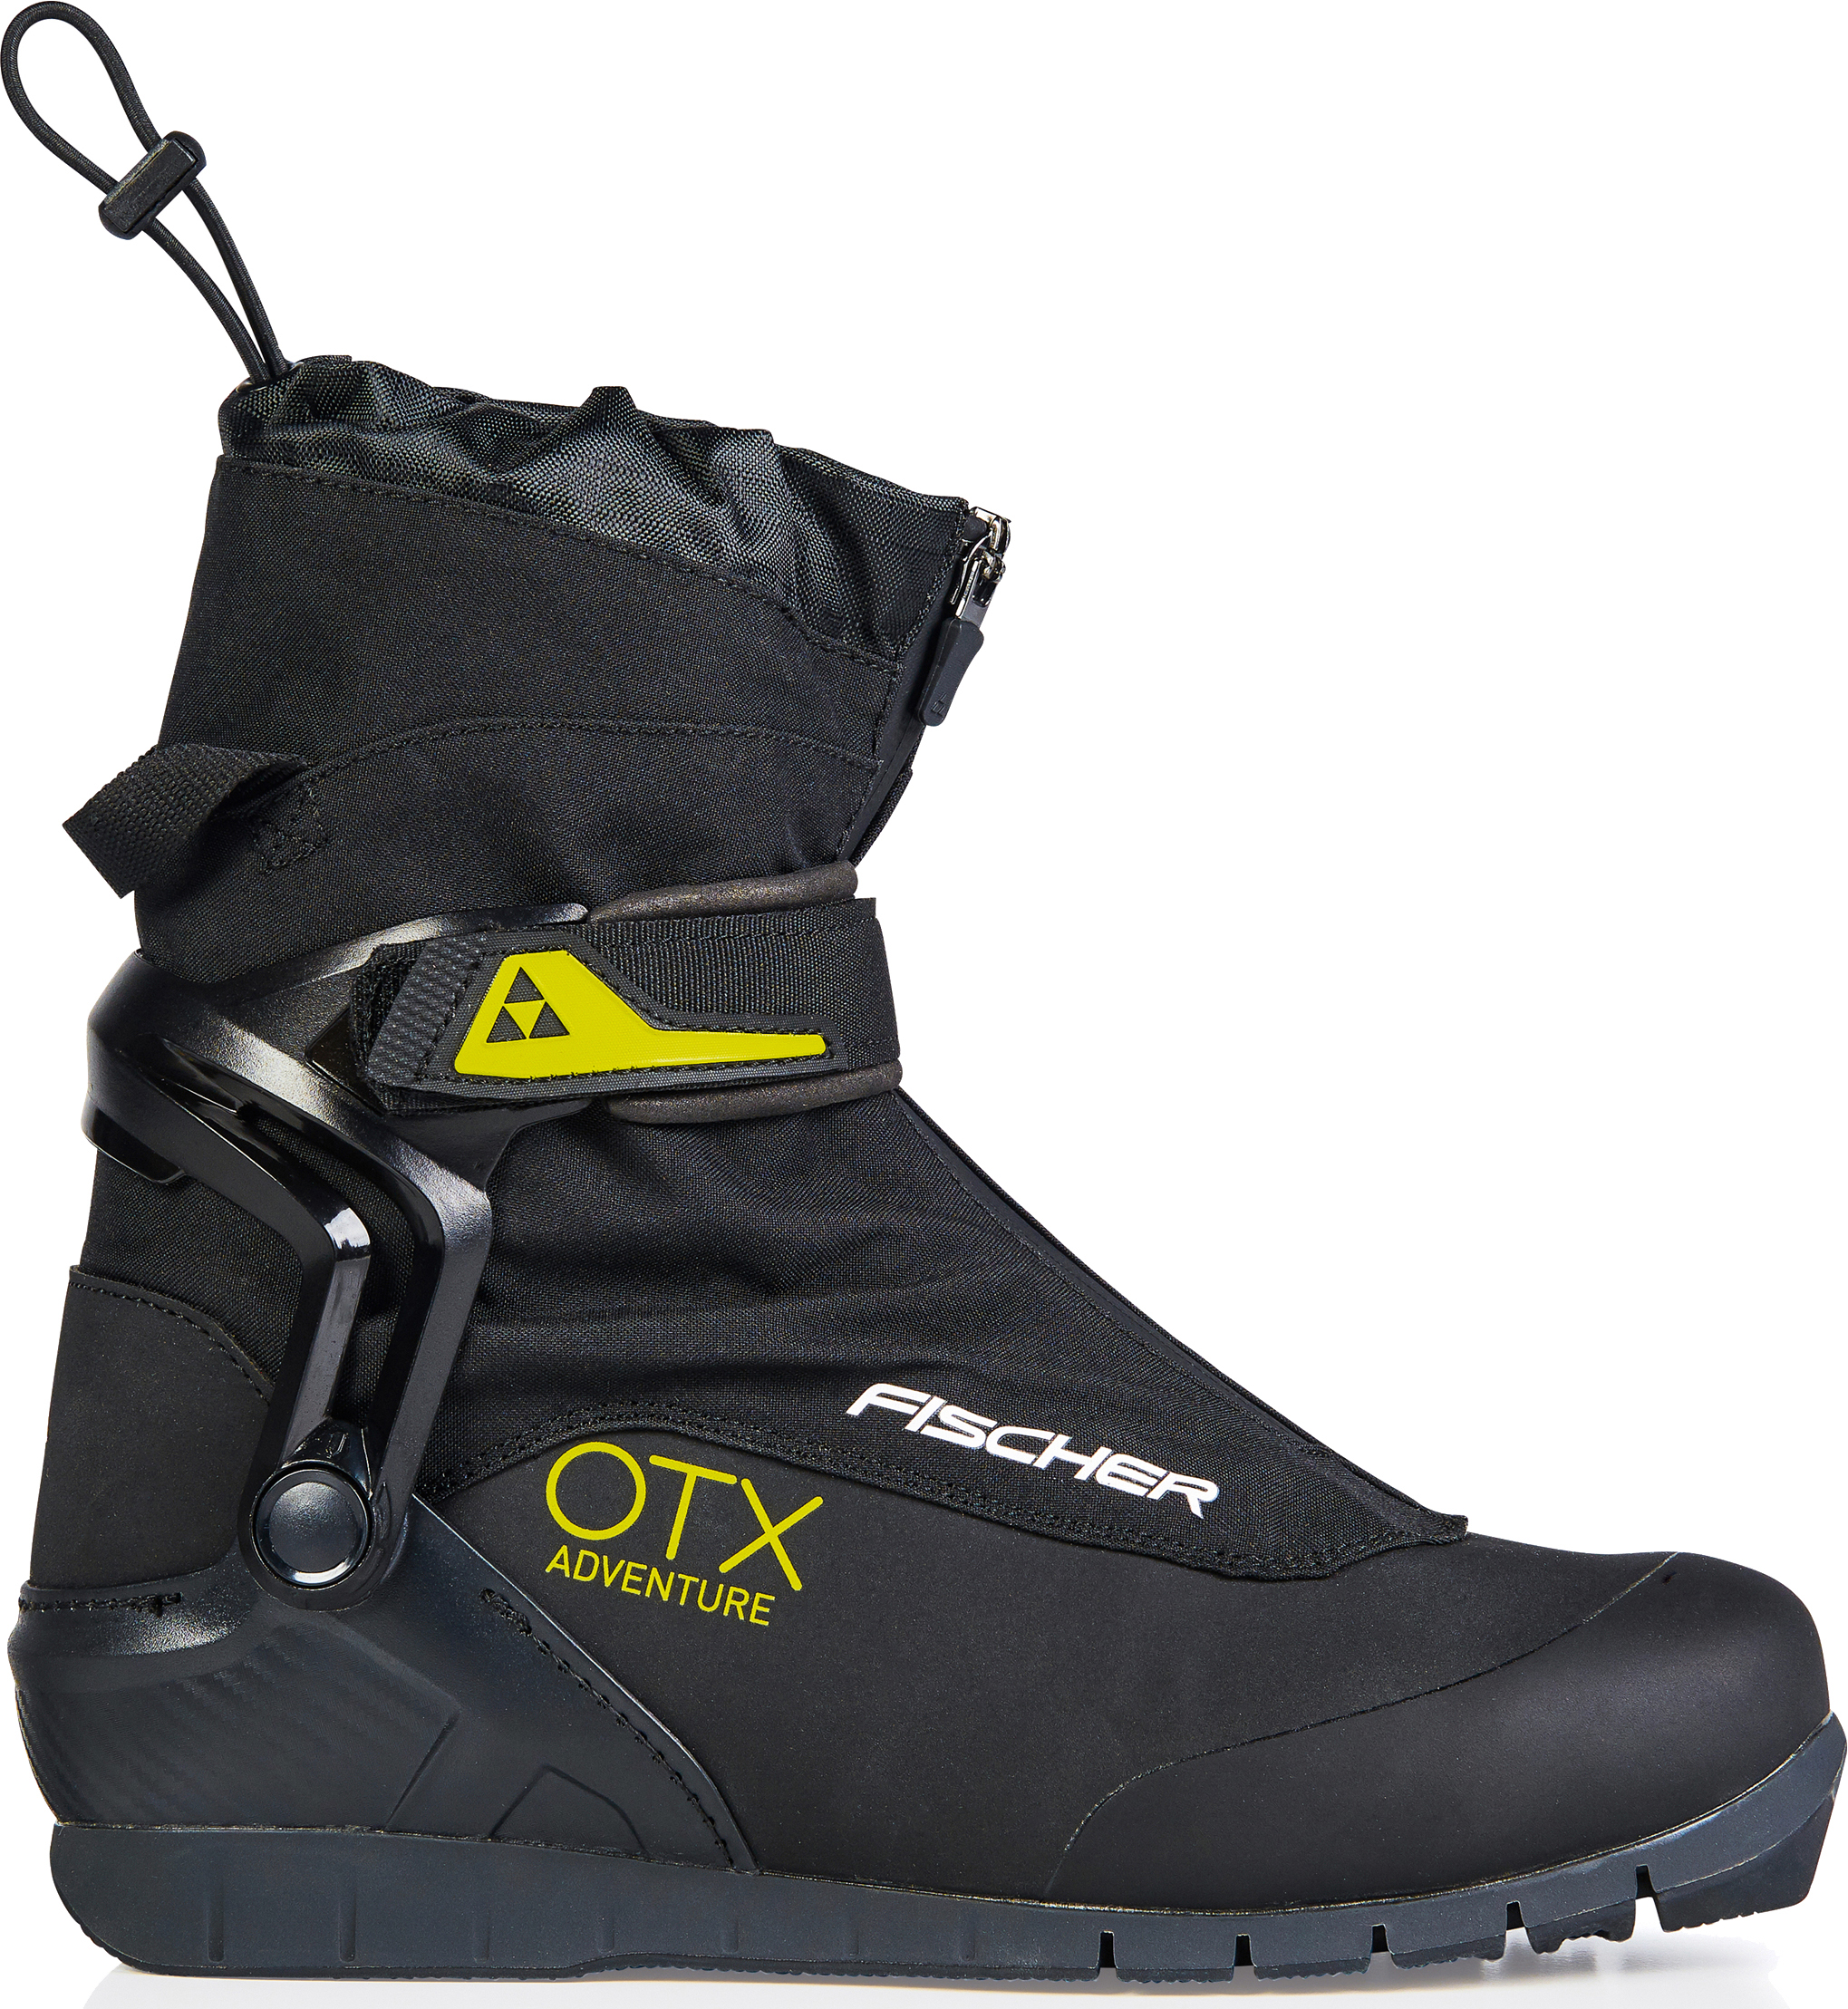 Лыжные ботинки Fischer OTX Adventure 42